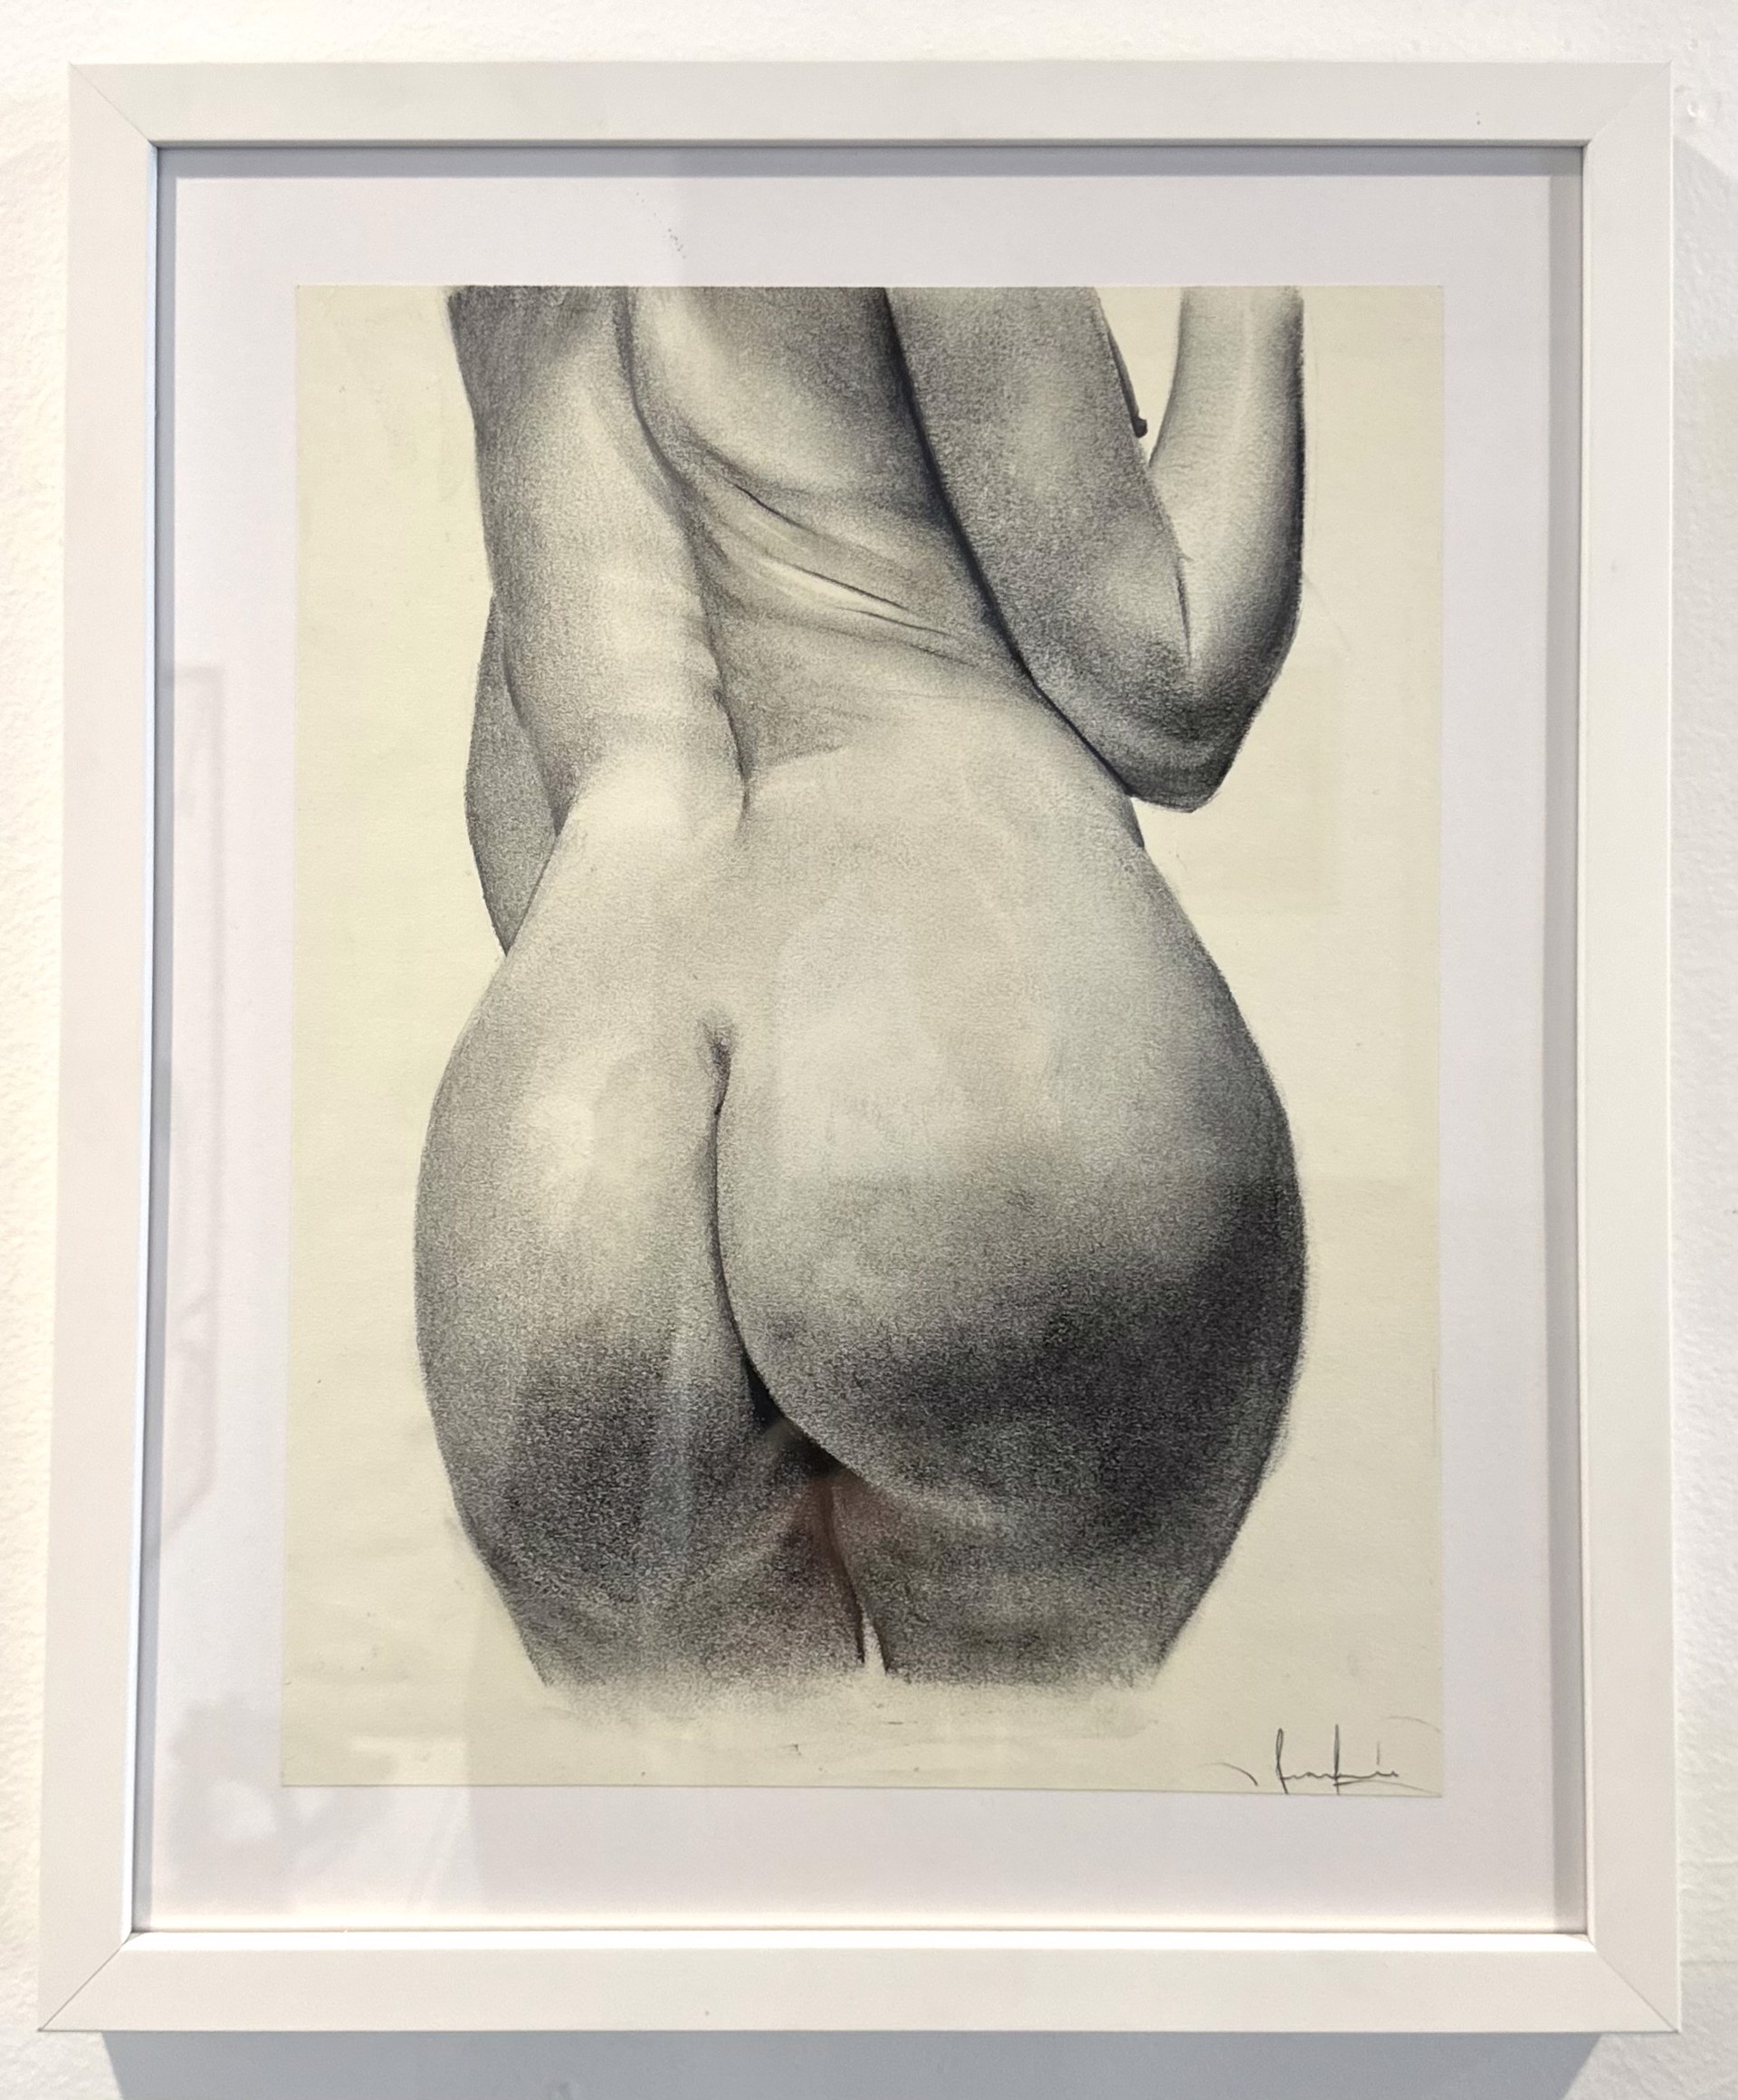 Nude Studies 2 by Francisco Javier